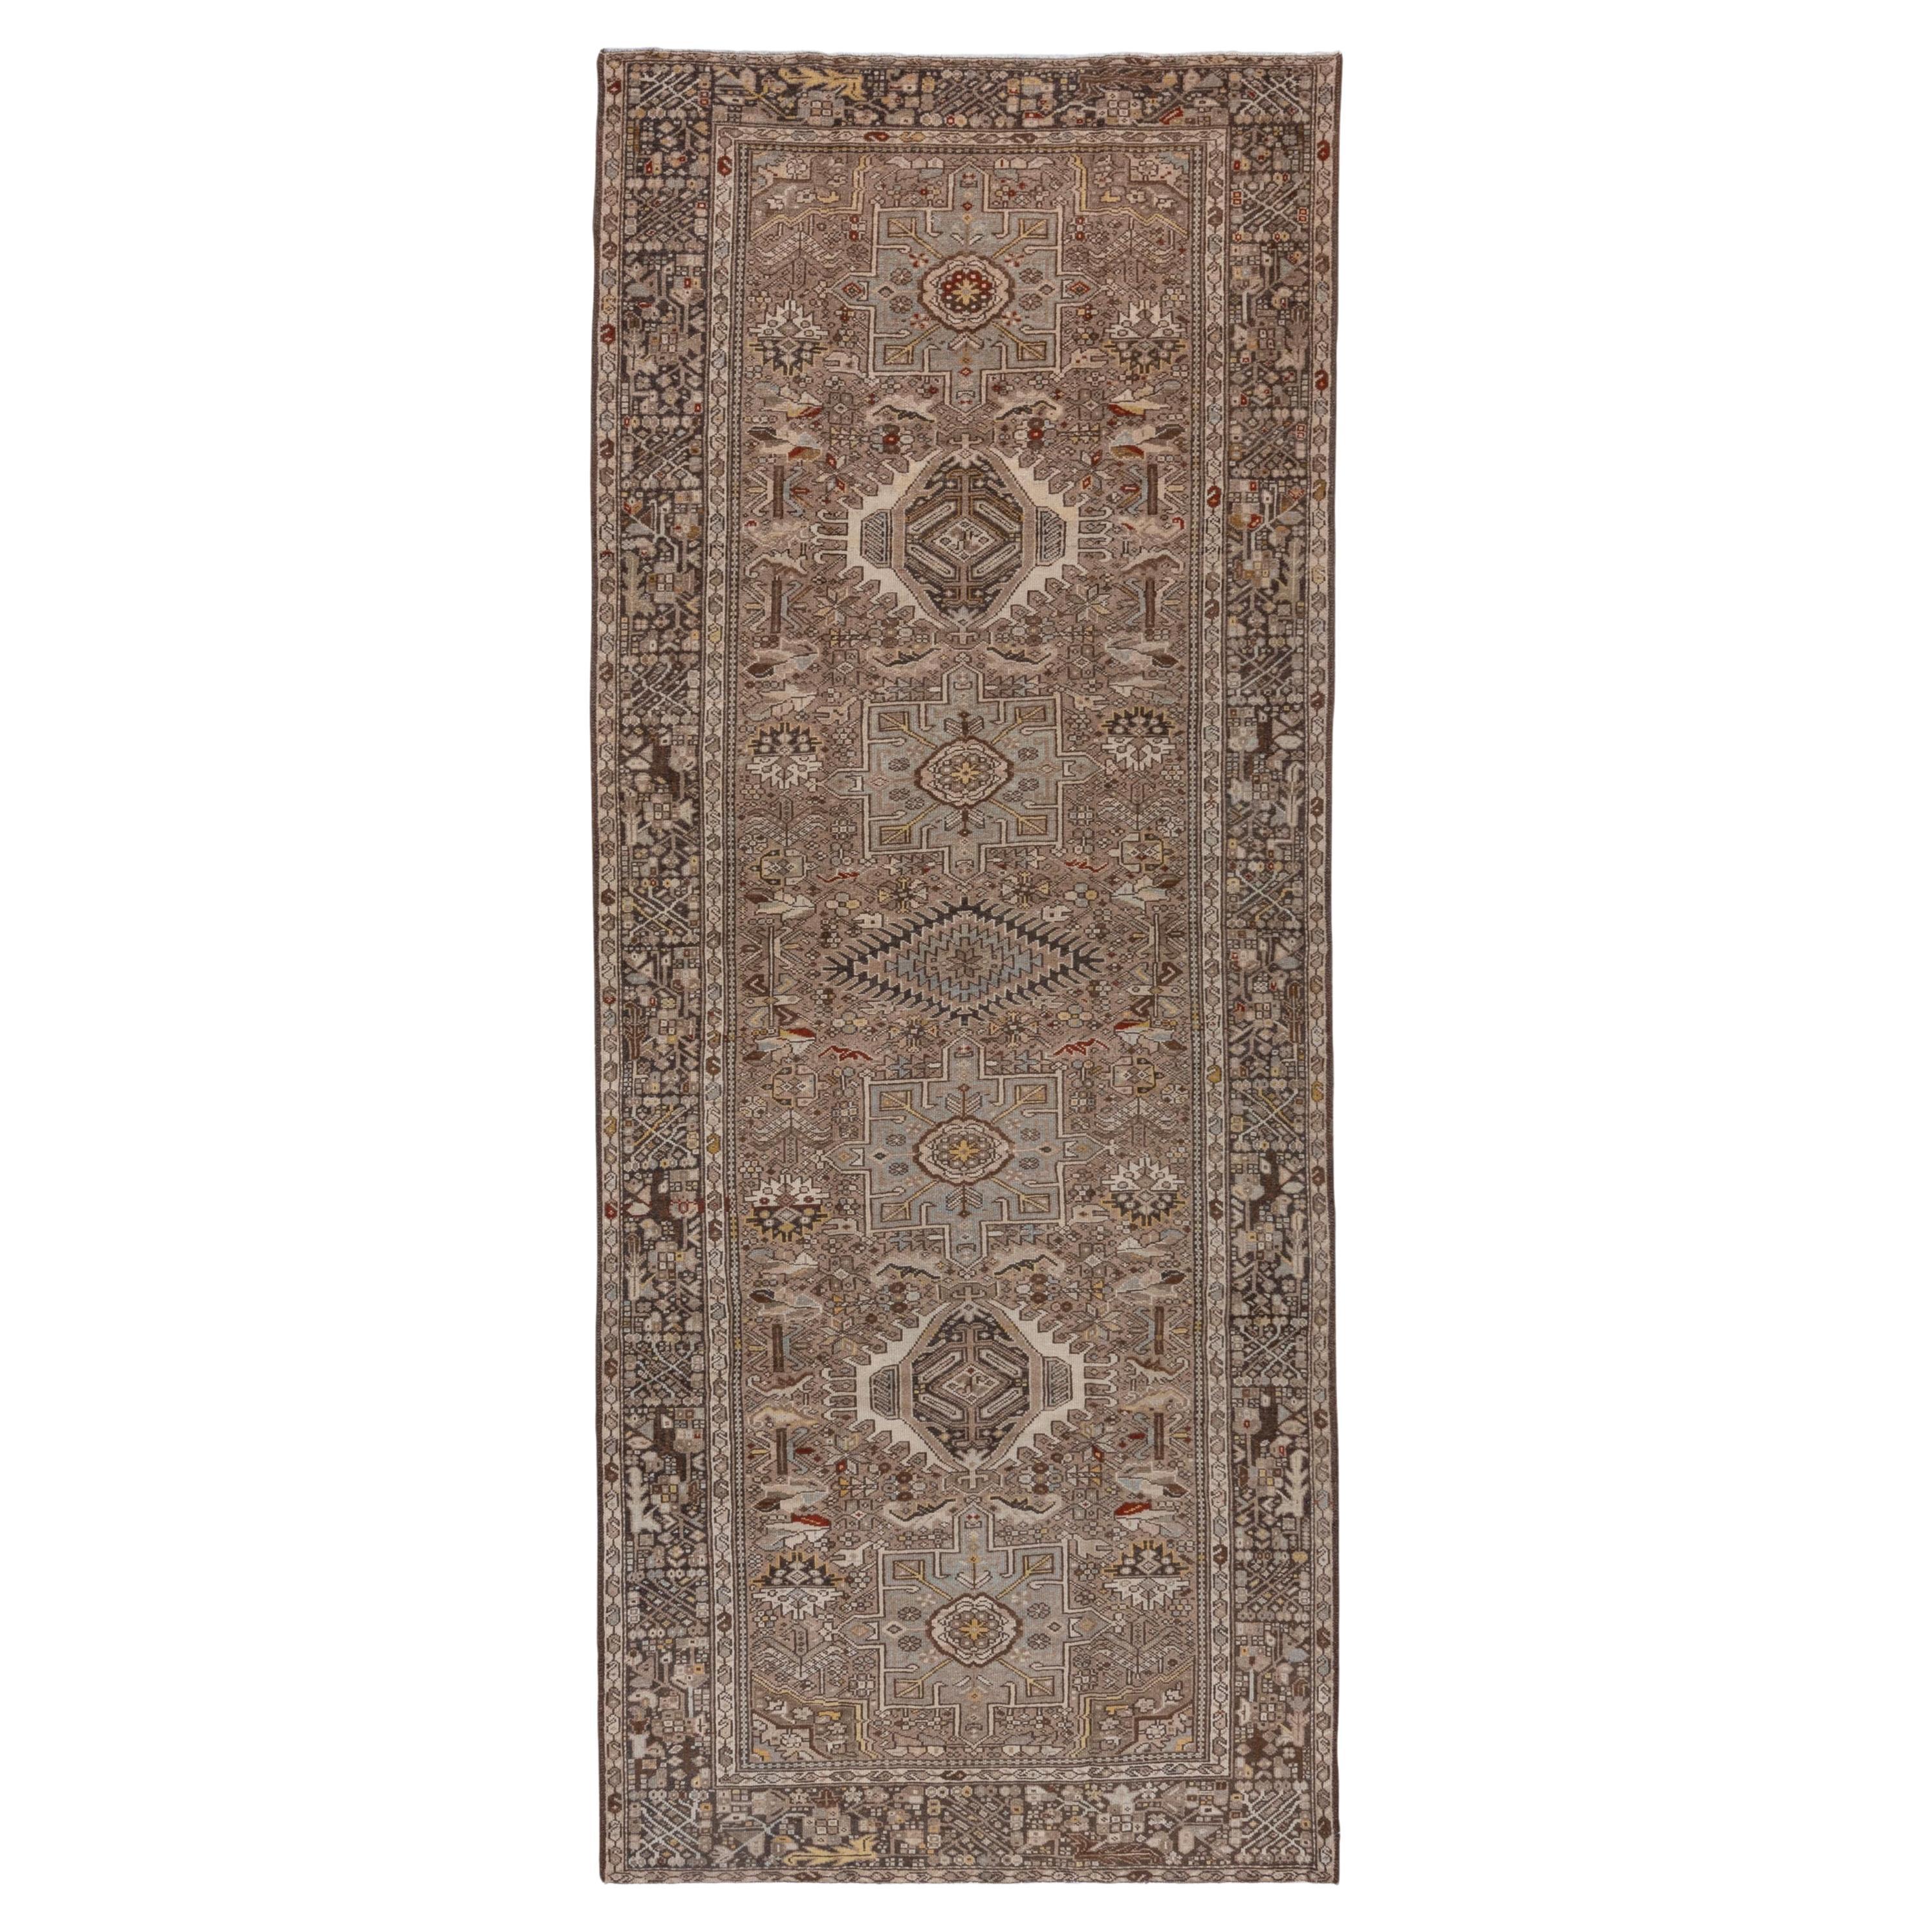 Schöner antiker persischer Karaje-Galerie-Teppich aus den 1930er Jahren mit kleineren bunten Akzenten